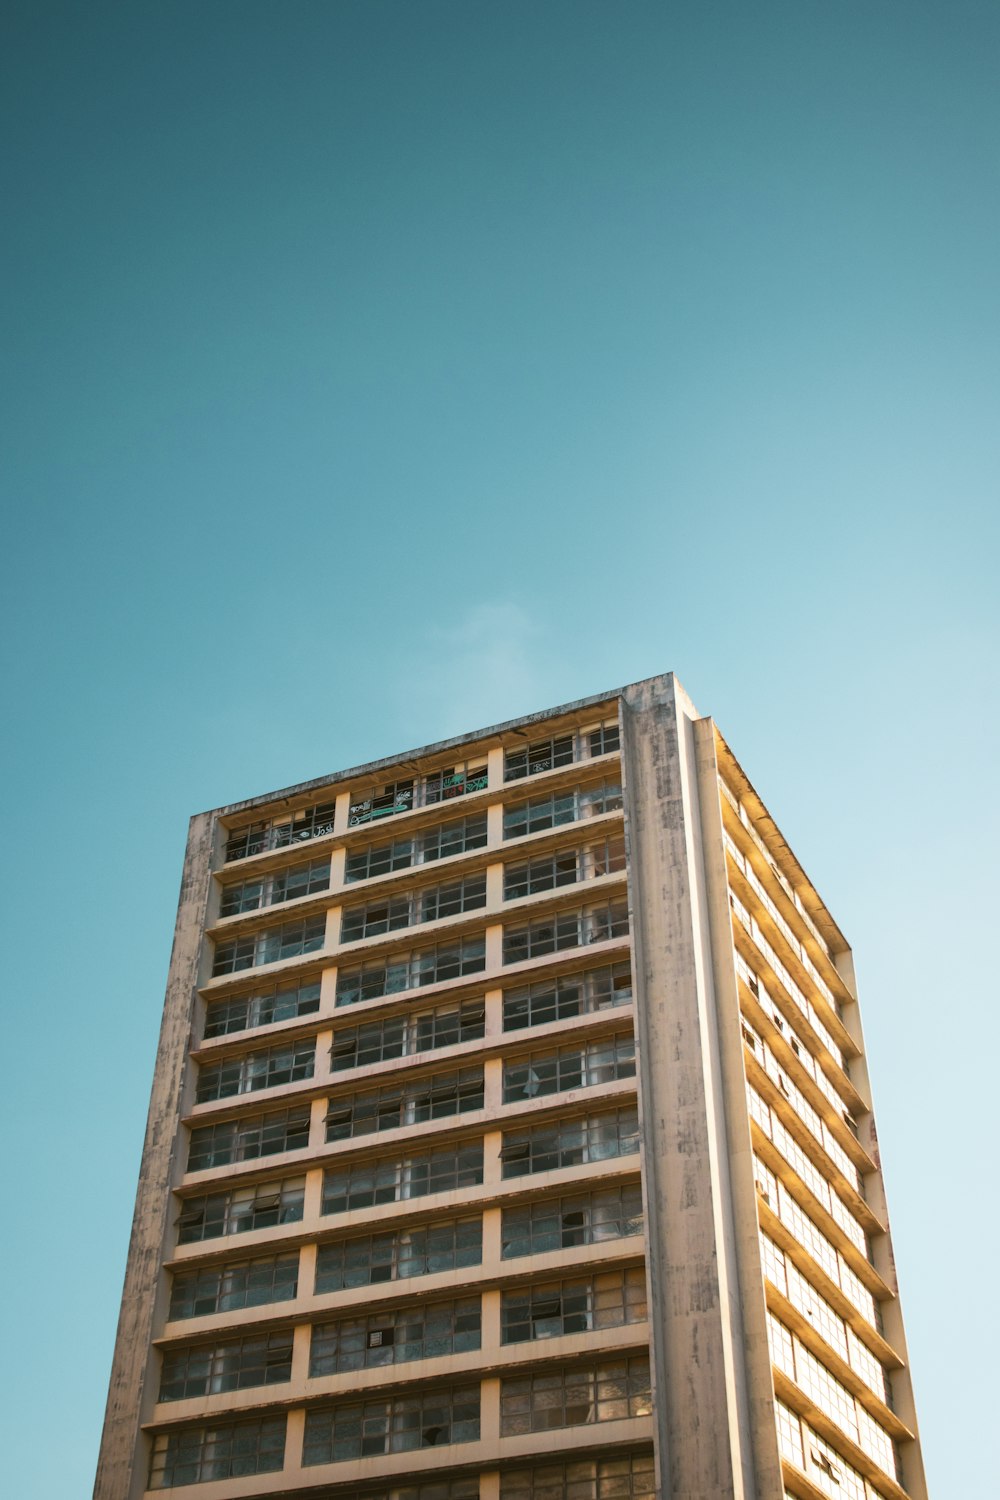 Ein hohes Gebäude mit Balkonen vor blauem Himmel